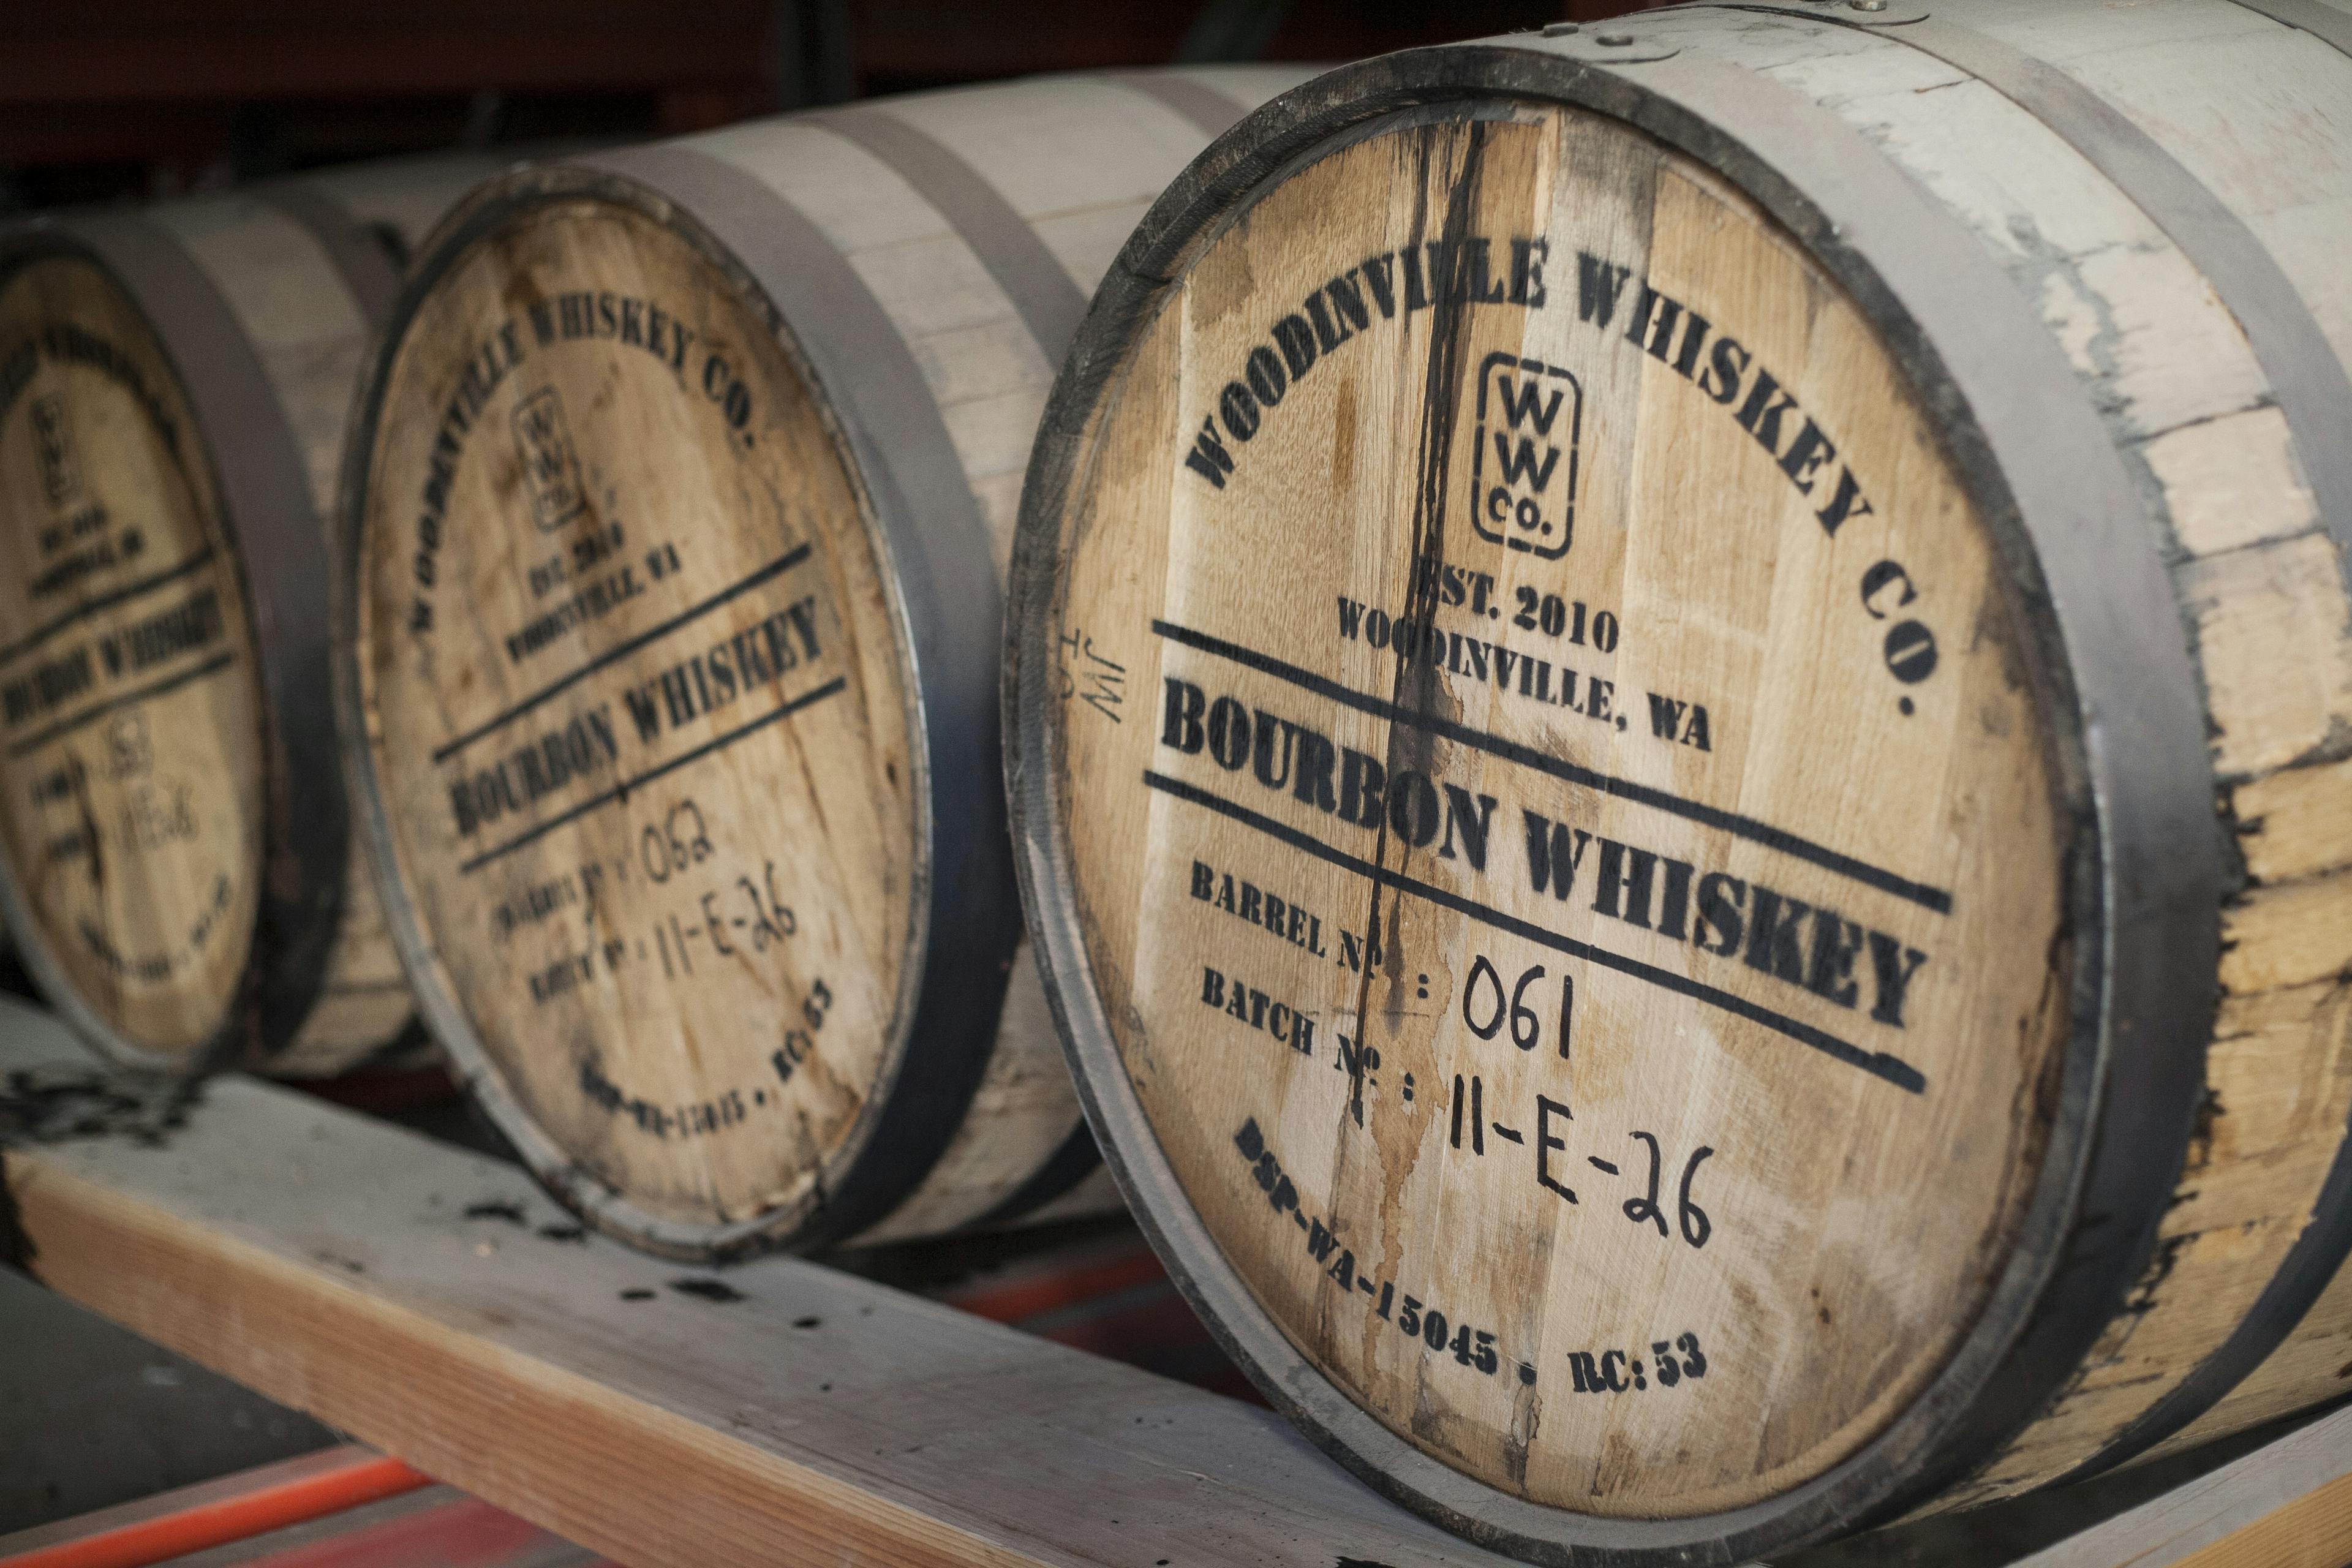 Barrel of Rye Whiskey